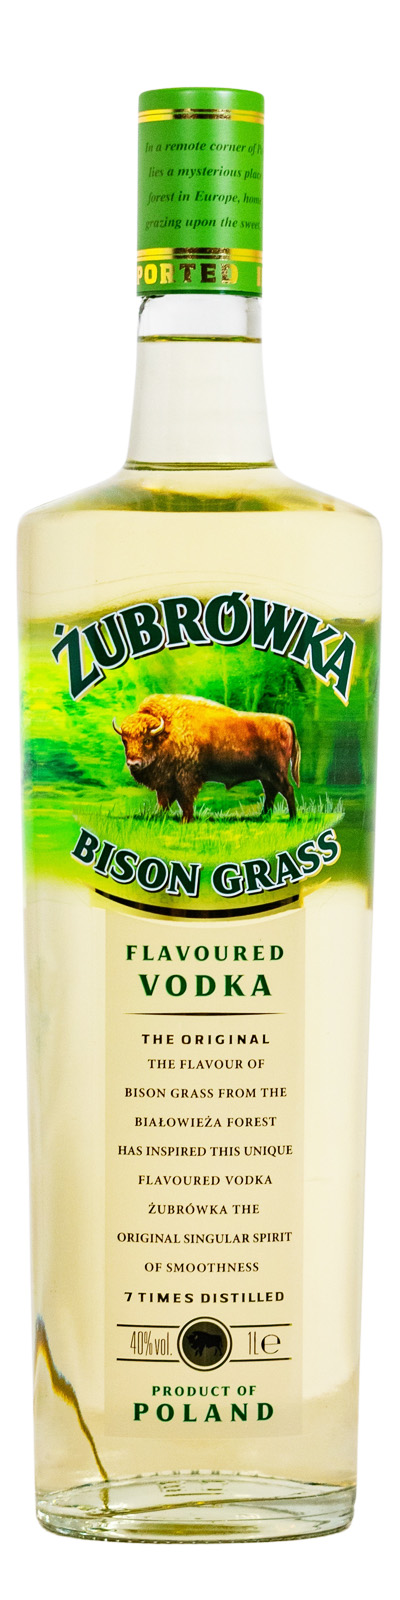 Zubrowka The Original günstig (1L) Bison Grass kaufen